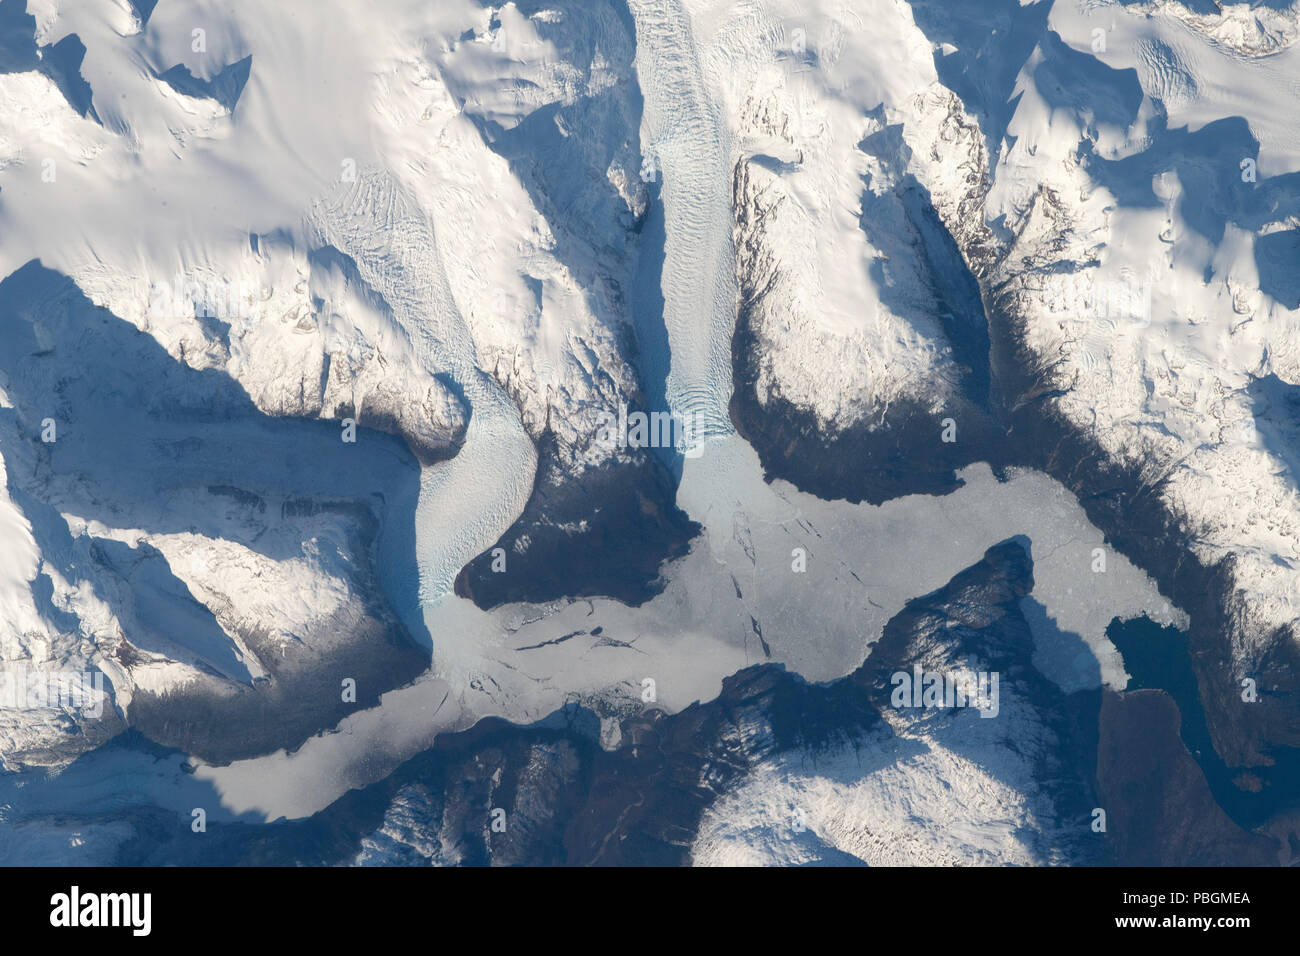 La NASA immagine satellitare di Torres del Paine ghiacciai, Cile, Sud America Foto Stock